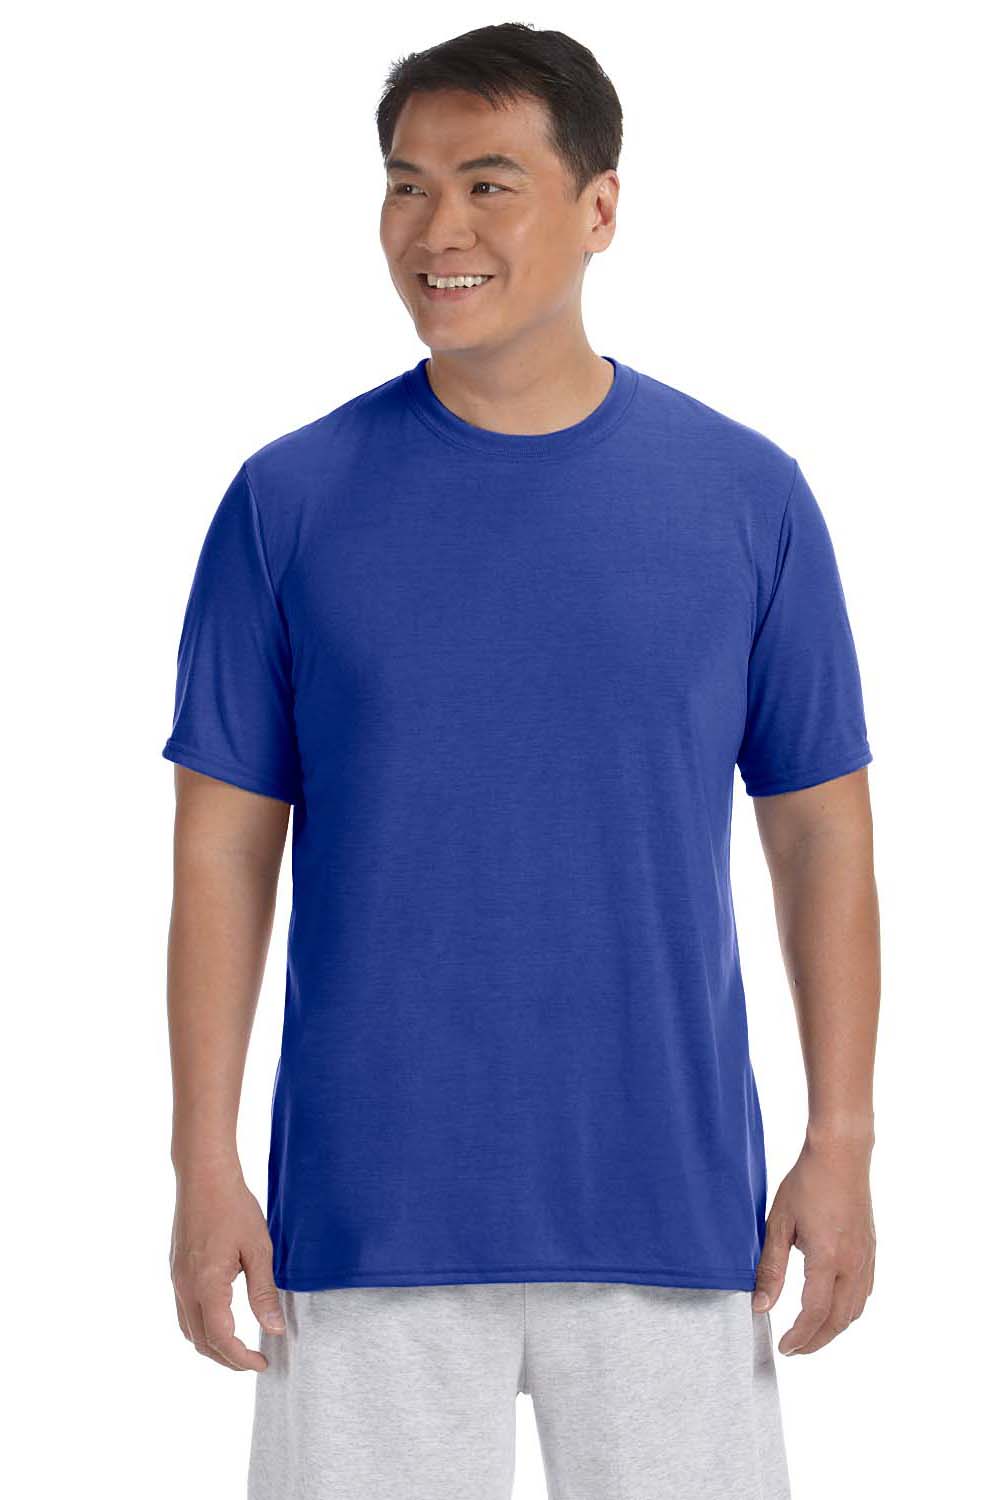 Gildan G420 Mens Performance Jersey Moisture Wicking Short Sleeve Crewneck T-Shirt Royal Blue Front